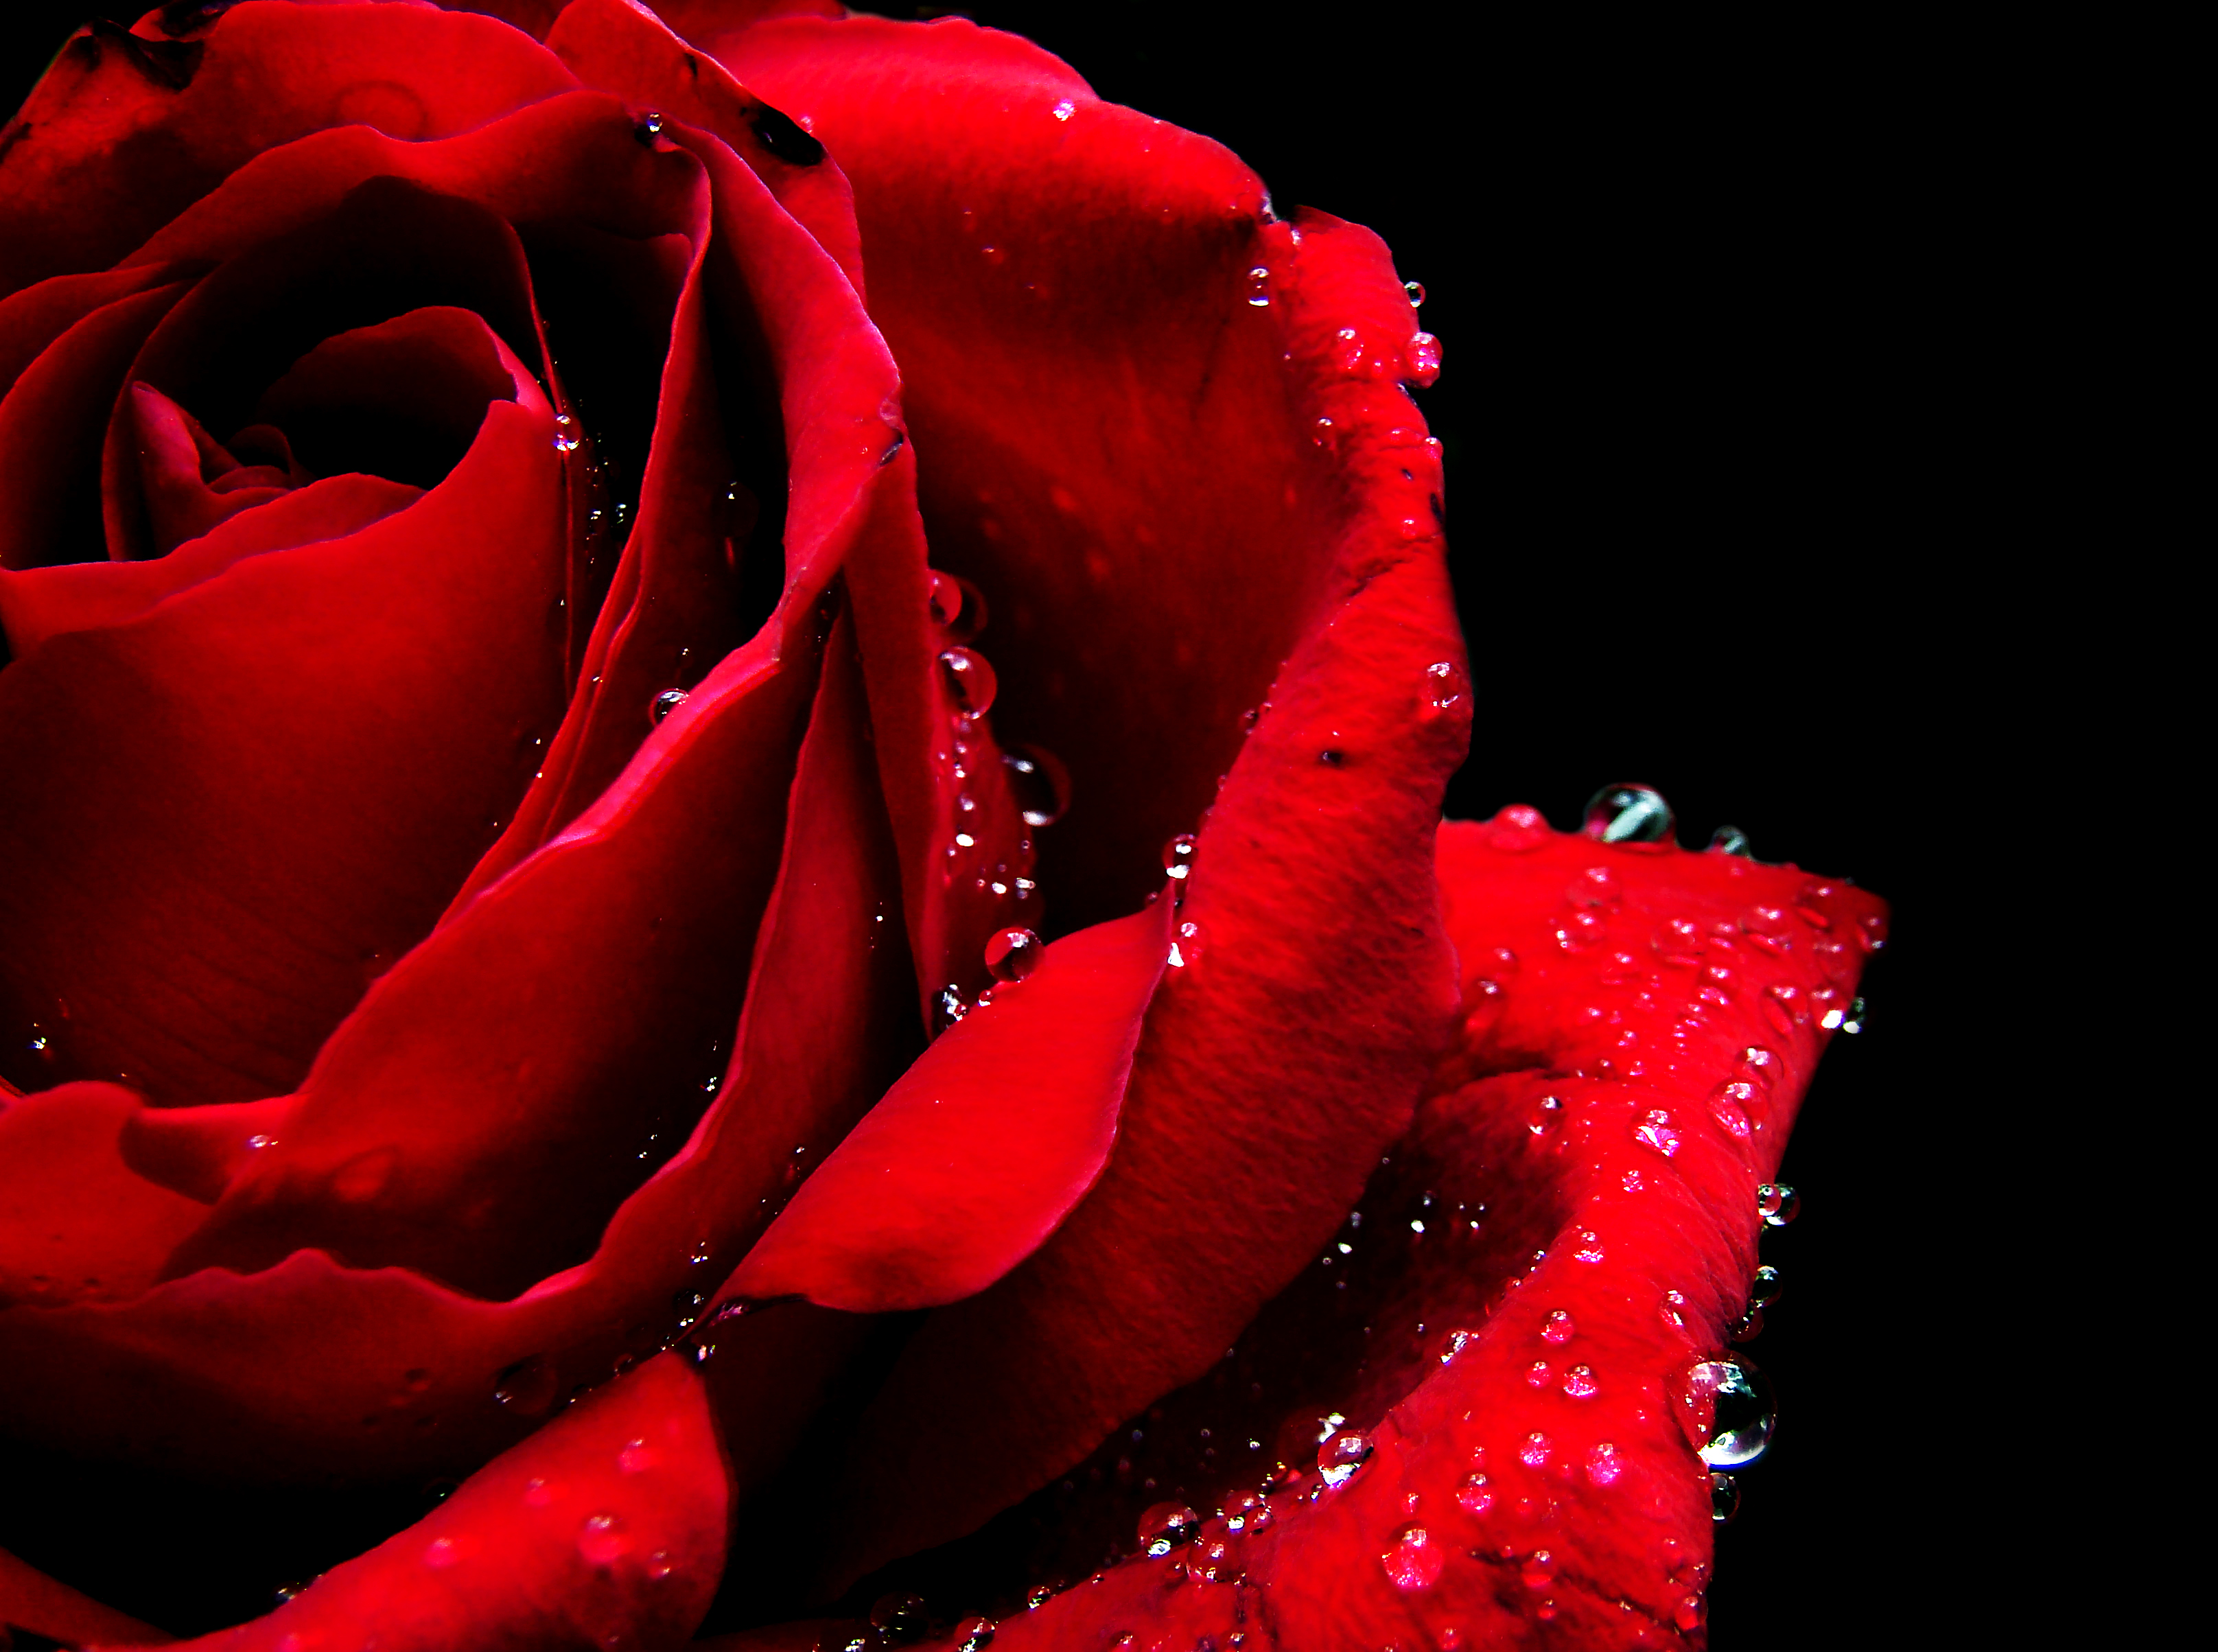 フリー画像 花 フラワー 薔薇 バラ 赤色 レッド 雫 水滴 レッド 花 画像素材なら 無料 フリー写真素材のフリーフォト